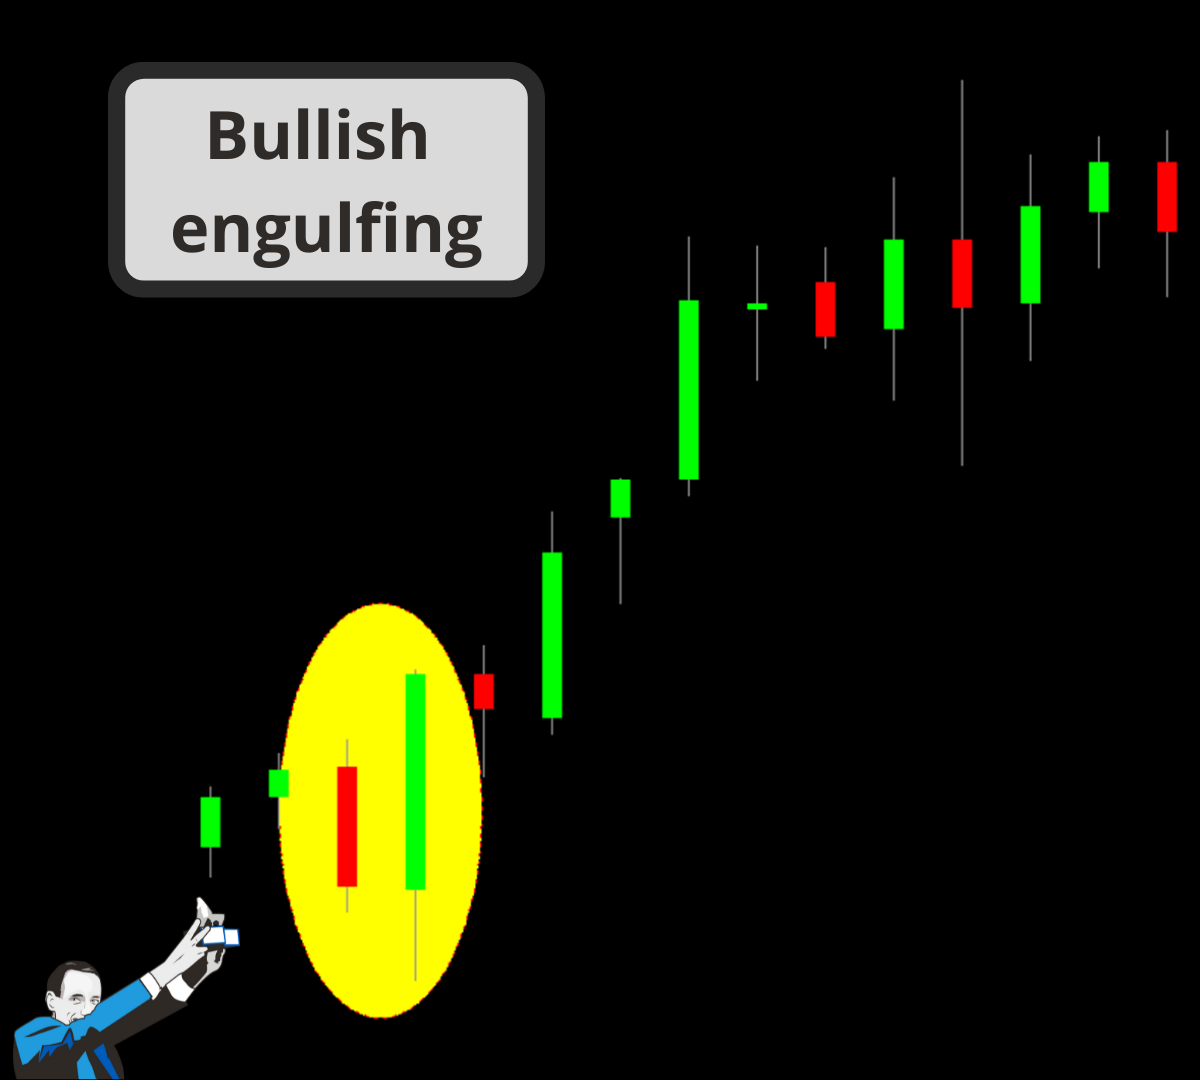 bullish engulfing pattern nei trading system